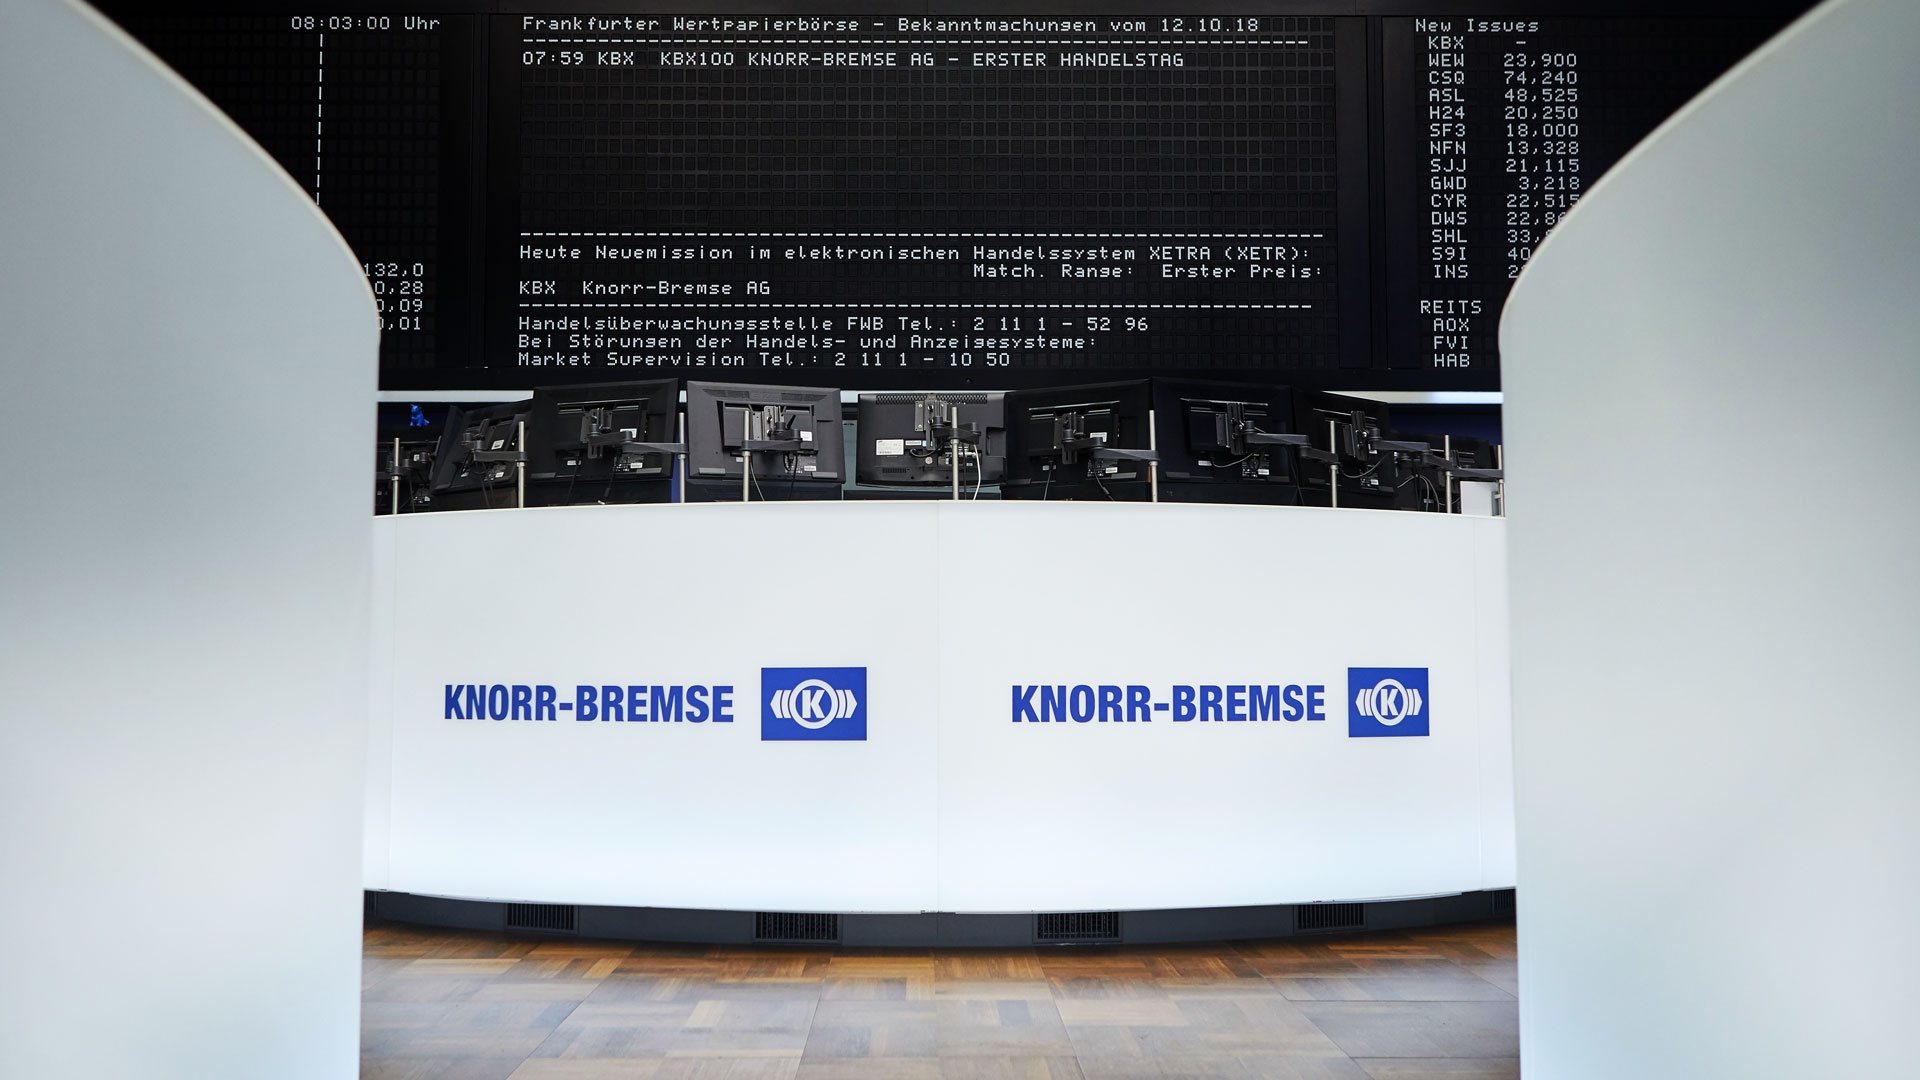 Das leere Börsenparkett in der Börse Frankfurt vor Handelsstart mit der Bekanntmachung am 12. Oktober 2018 "KBX100 Knorr-Bremse AG - Erster Handelstag" auf der Anzeigetafel.